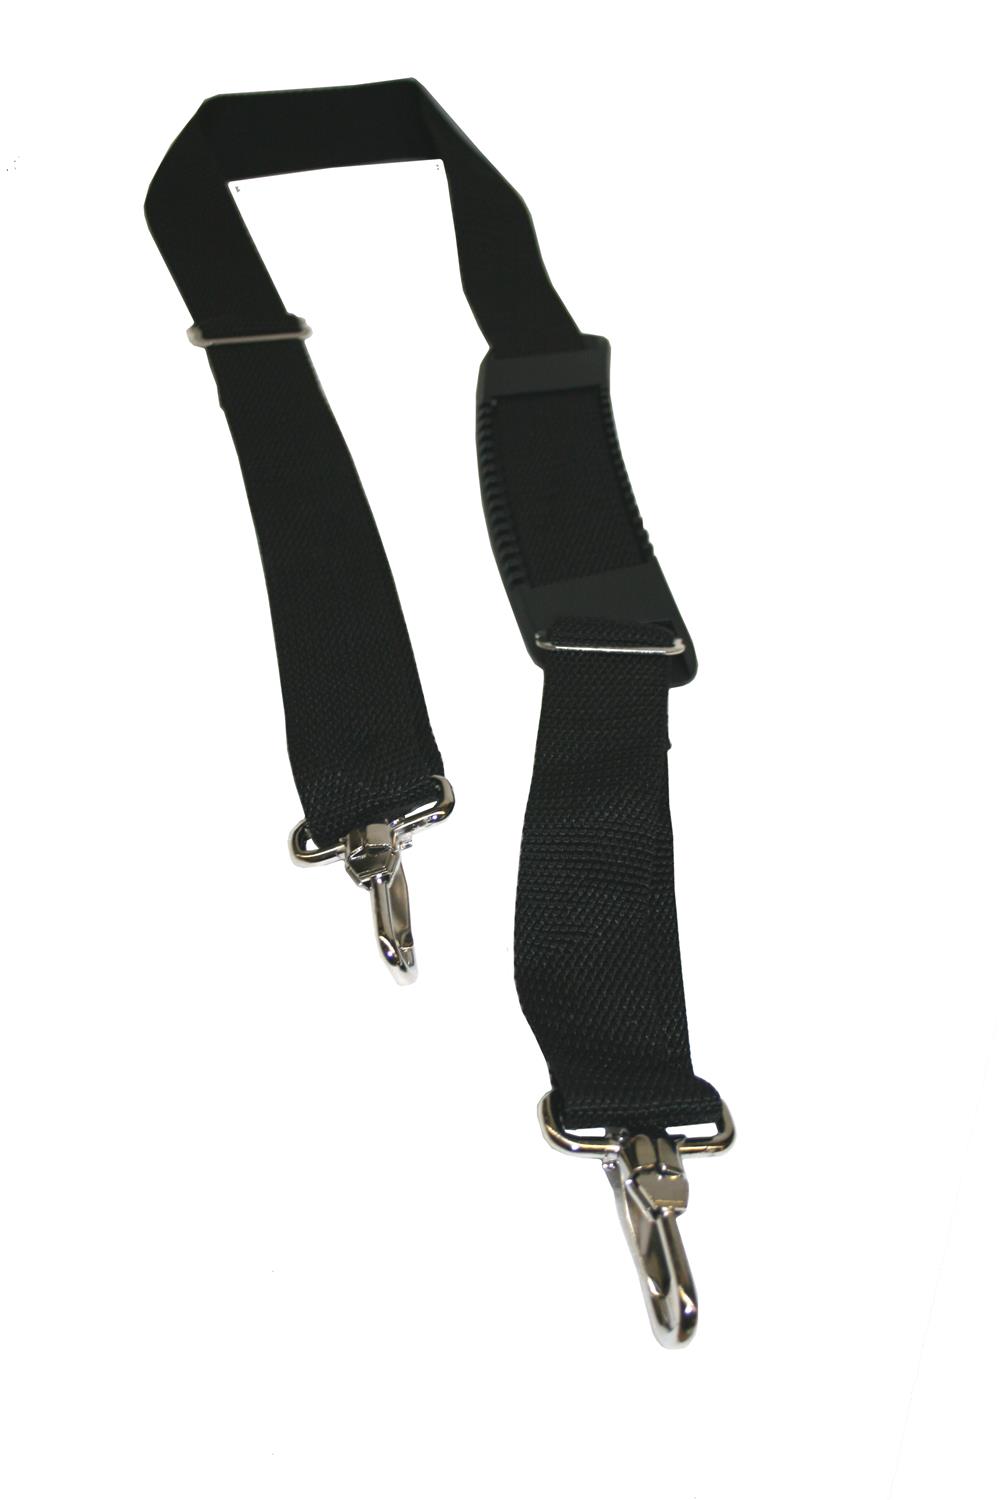 Polyester Underwear Shoulder Straps Smooth Adjustable Non-slip Elastic  Bands Vest Sling Bra Straps - China Wholesale Shoulder Straps $0.05 from  Skylark Network Co., Ltd.